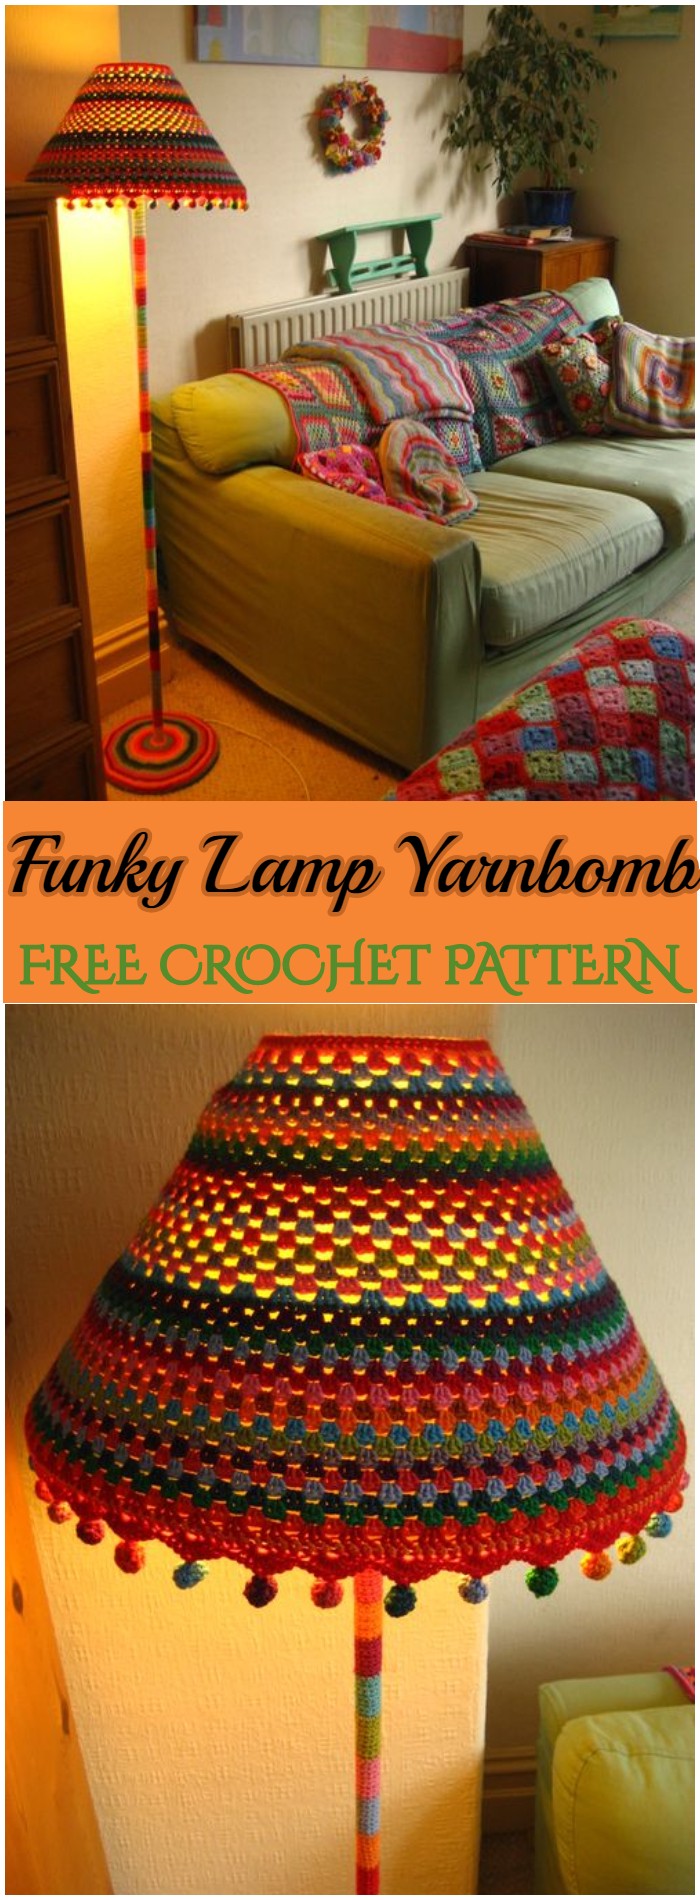 Crochet Funky Lamp Yarnbomb